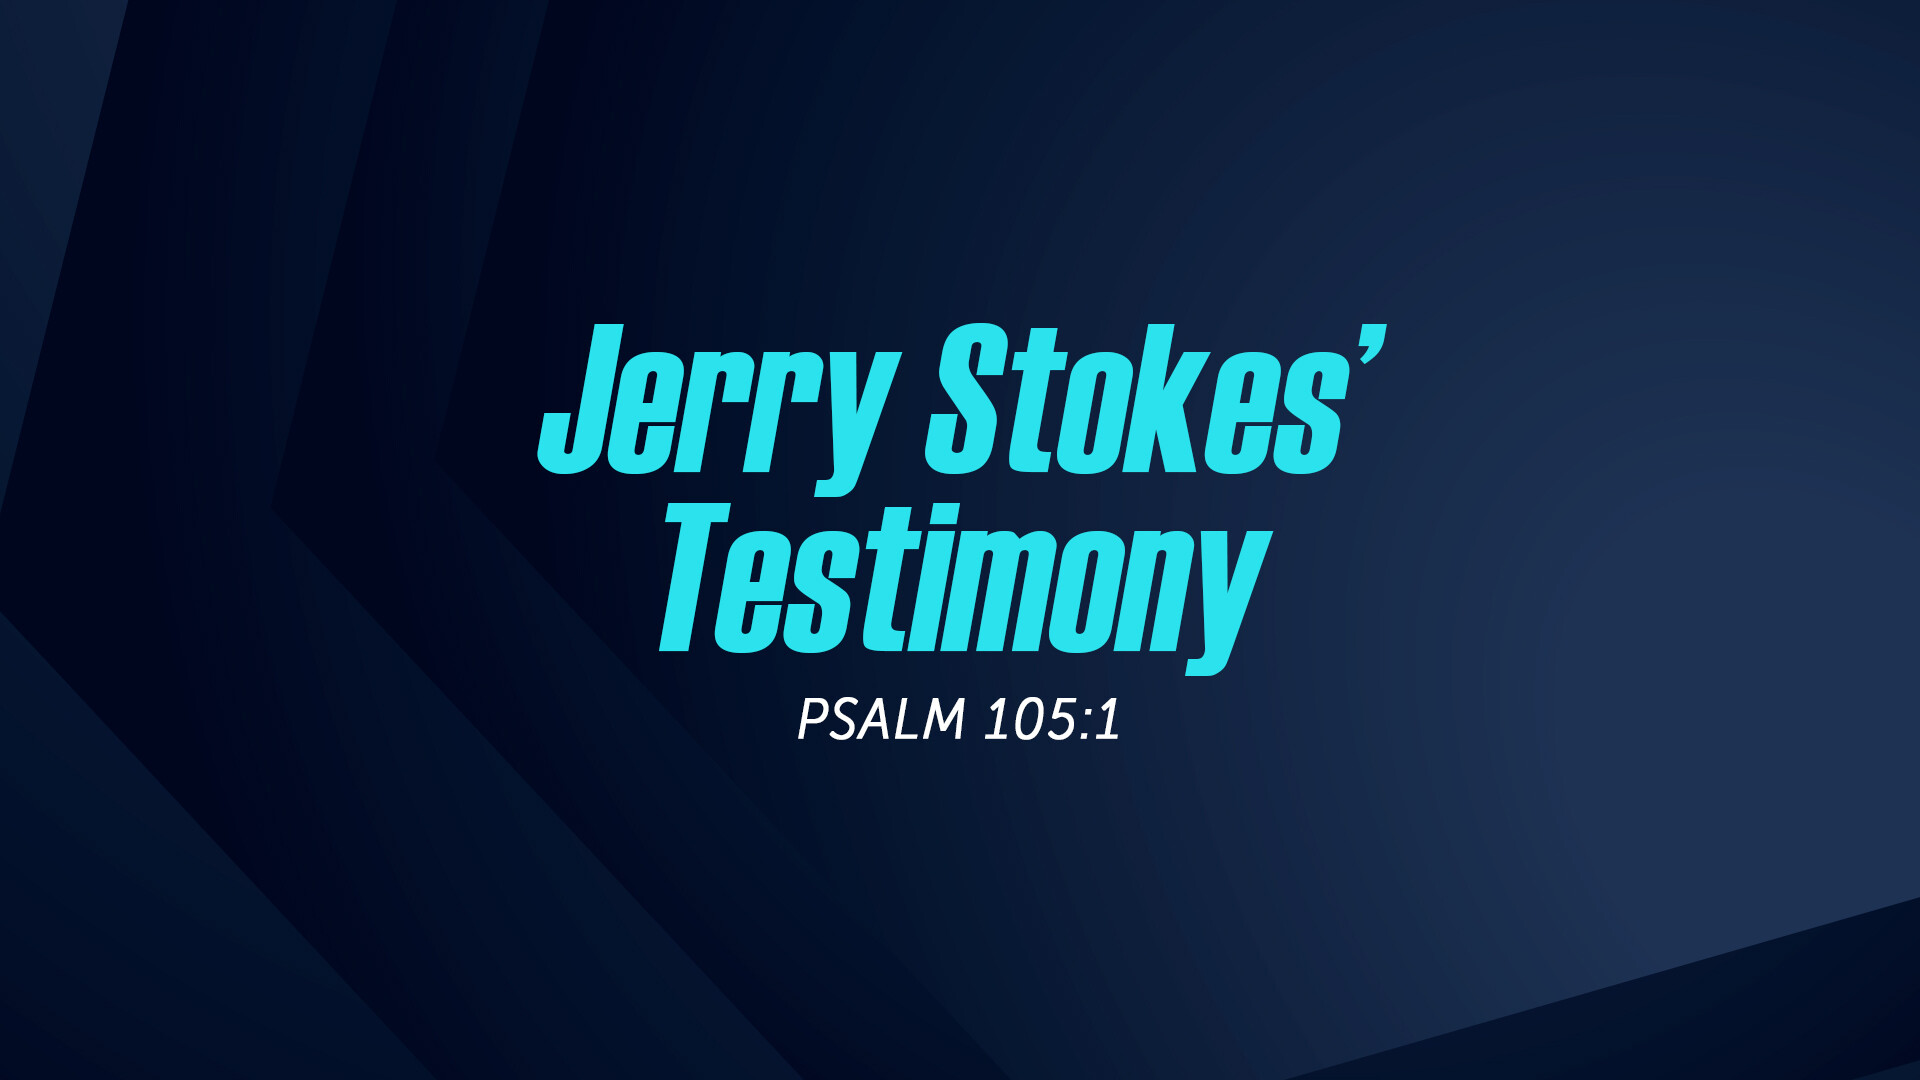 Jerry Stokes' Testimony